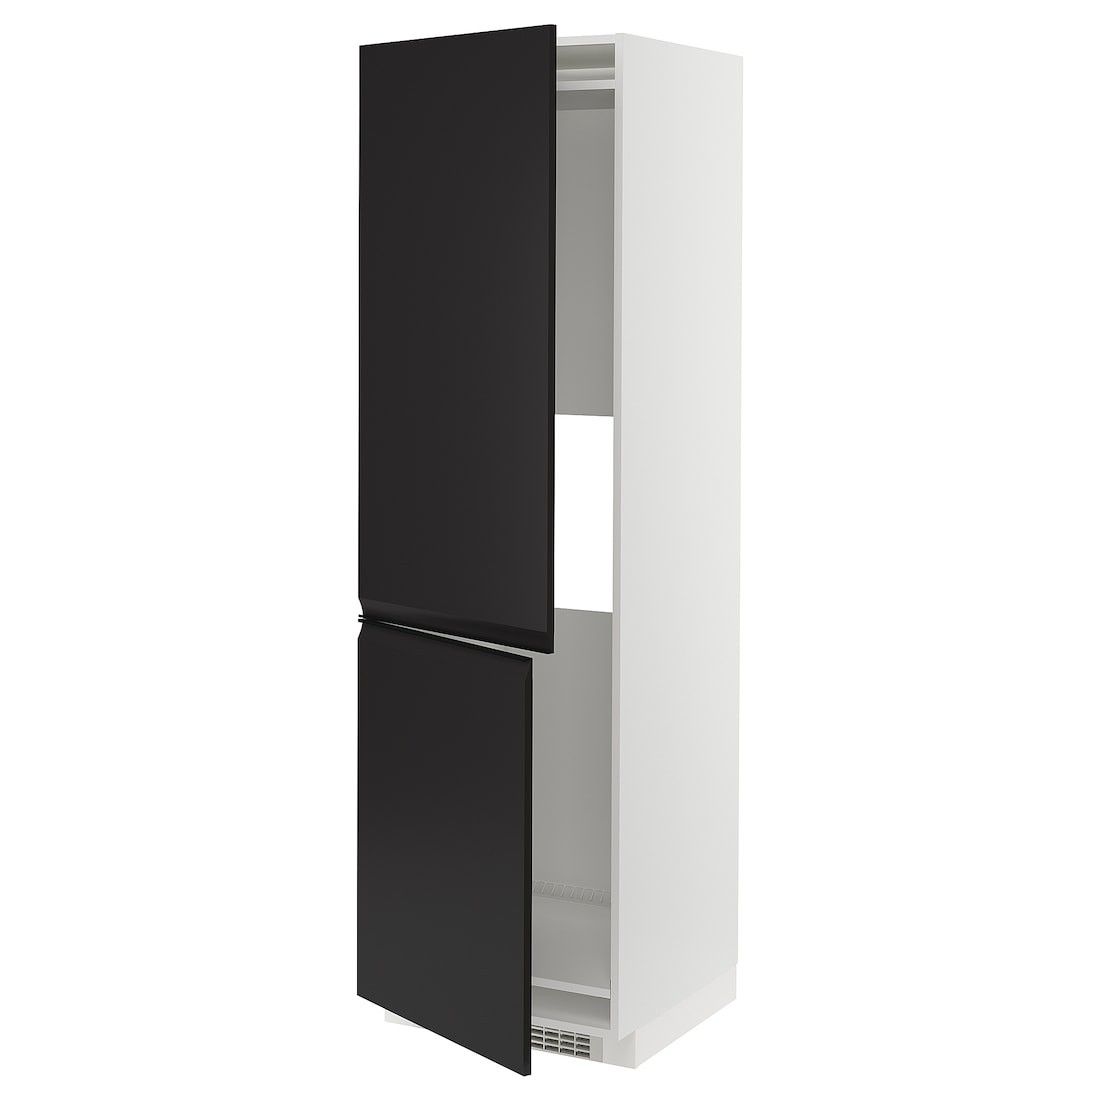 METOD МЕТОД Высокий шкаф для холодильника / морозильника, белый / Upplöv матовый антрацит, 60x60x200 см